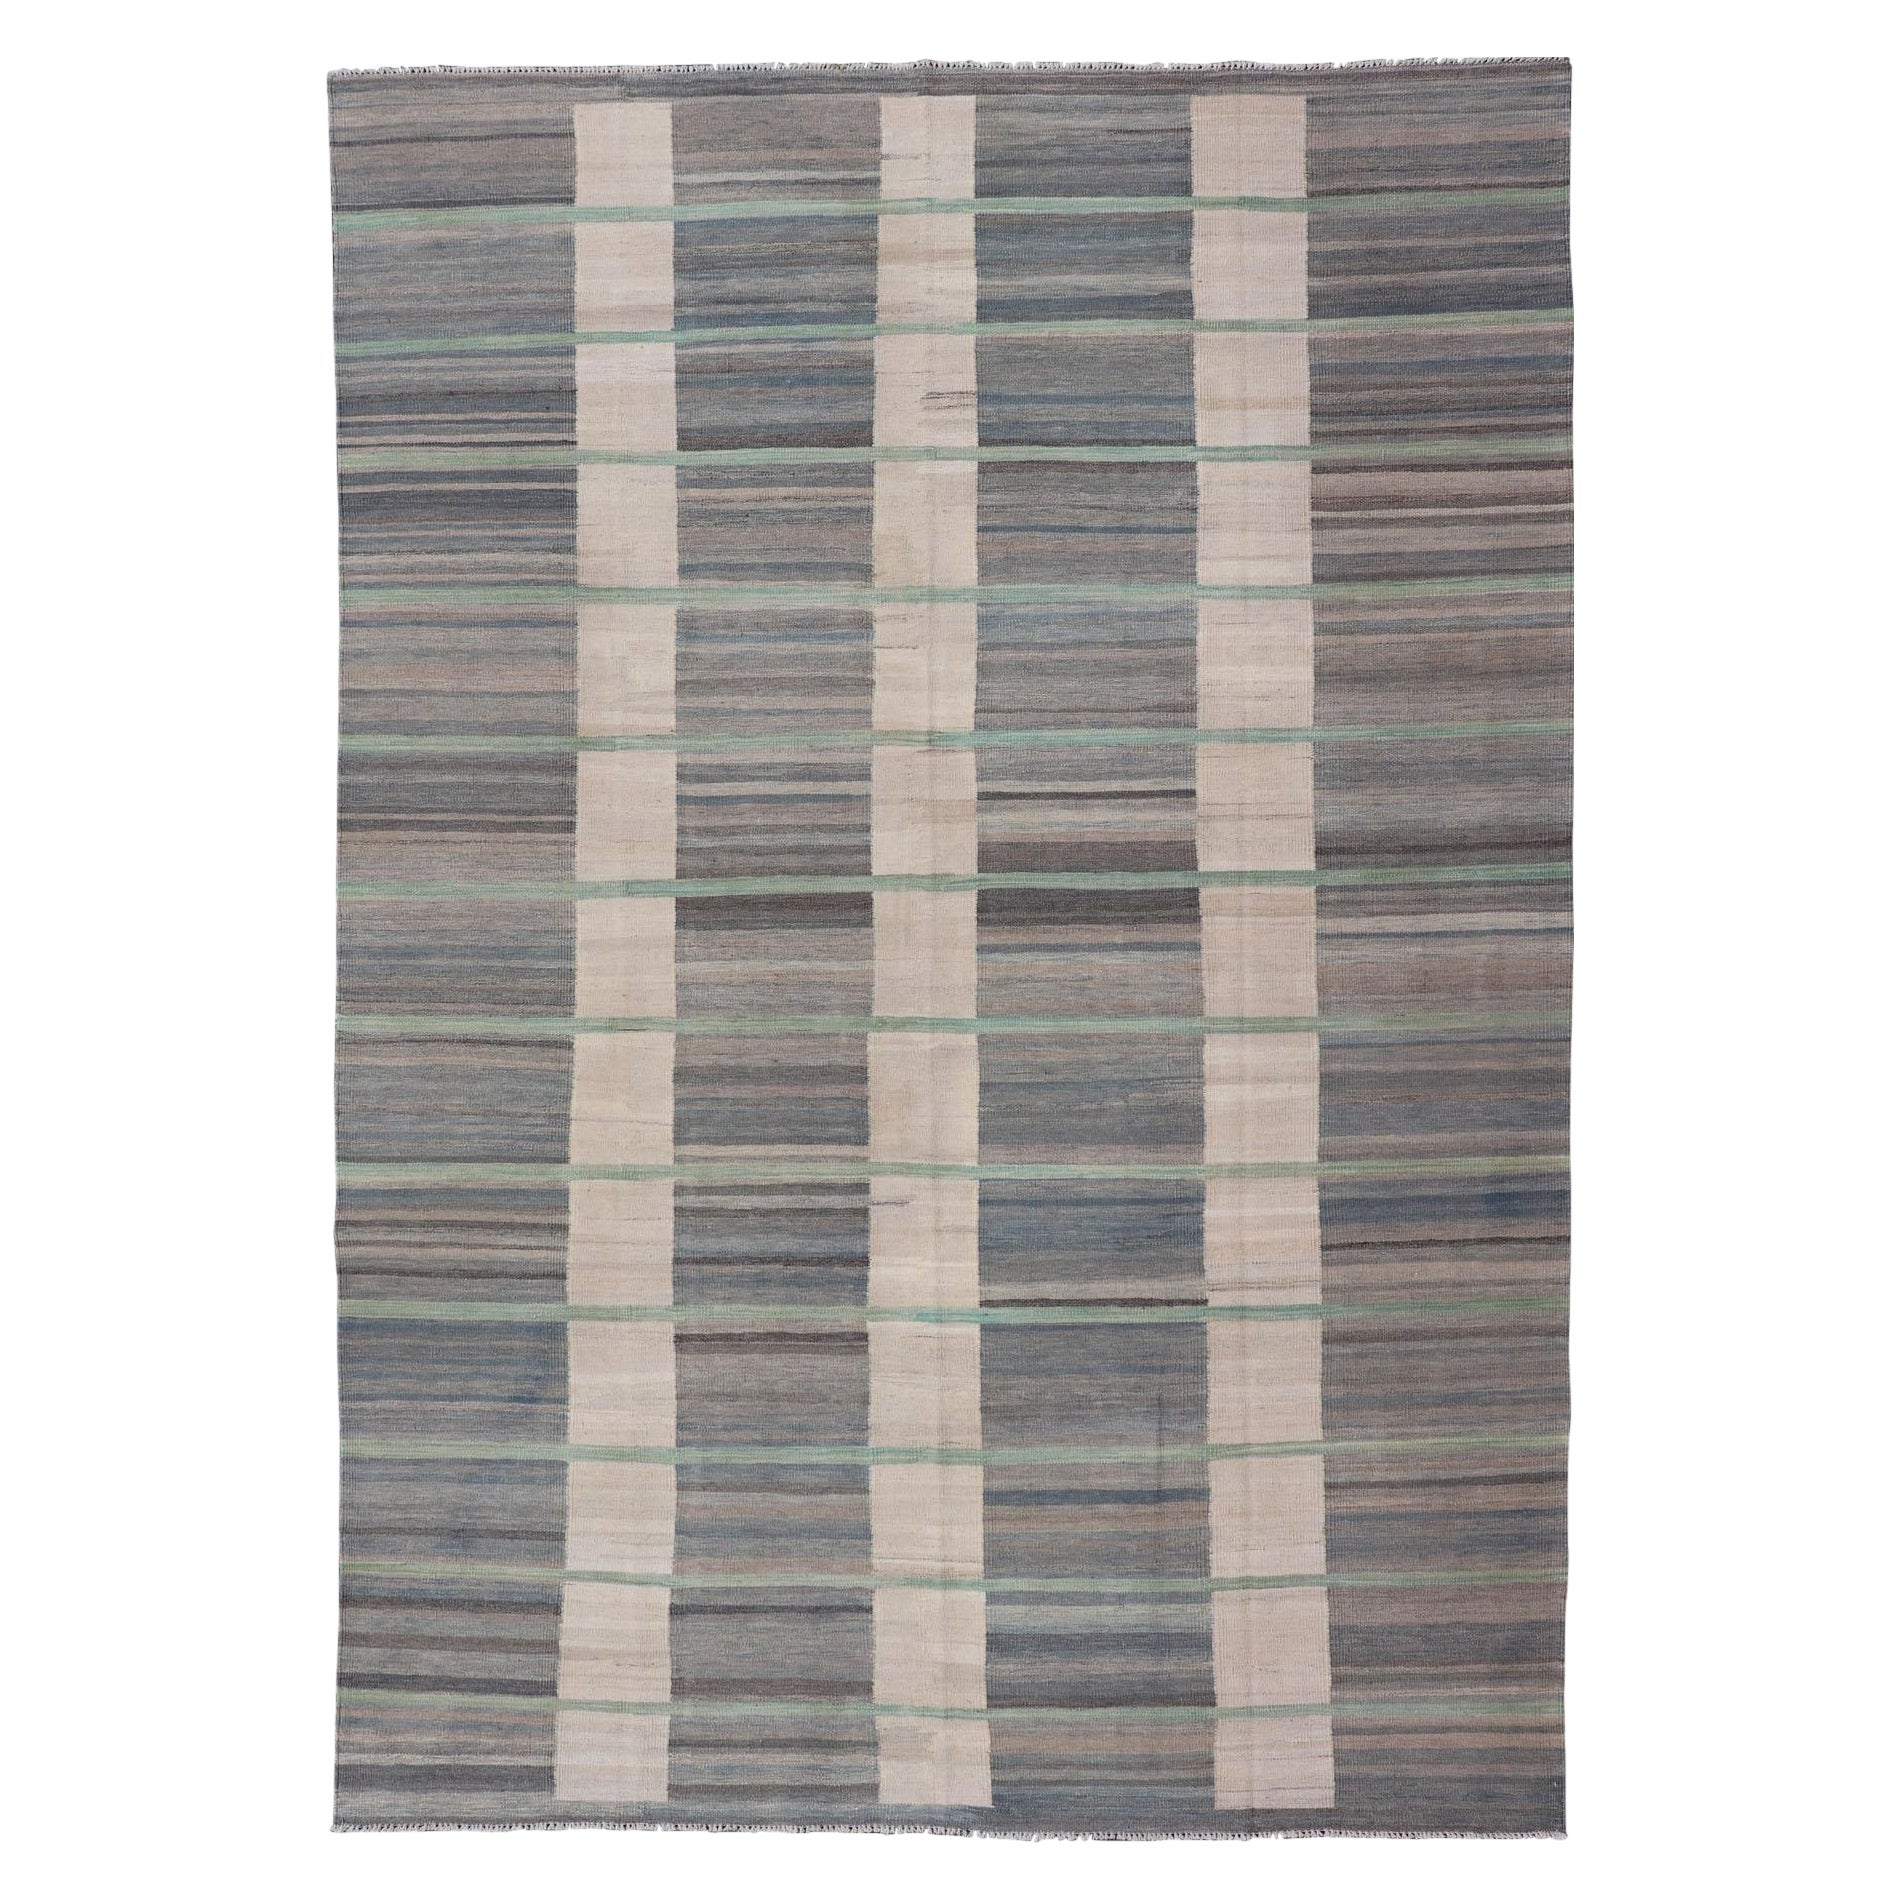  Moderner flachgewebter Kilim-Teppich in Grau-, Braun-, Creme-, Blau- und Grüntönen